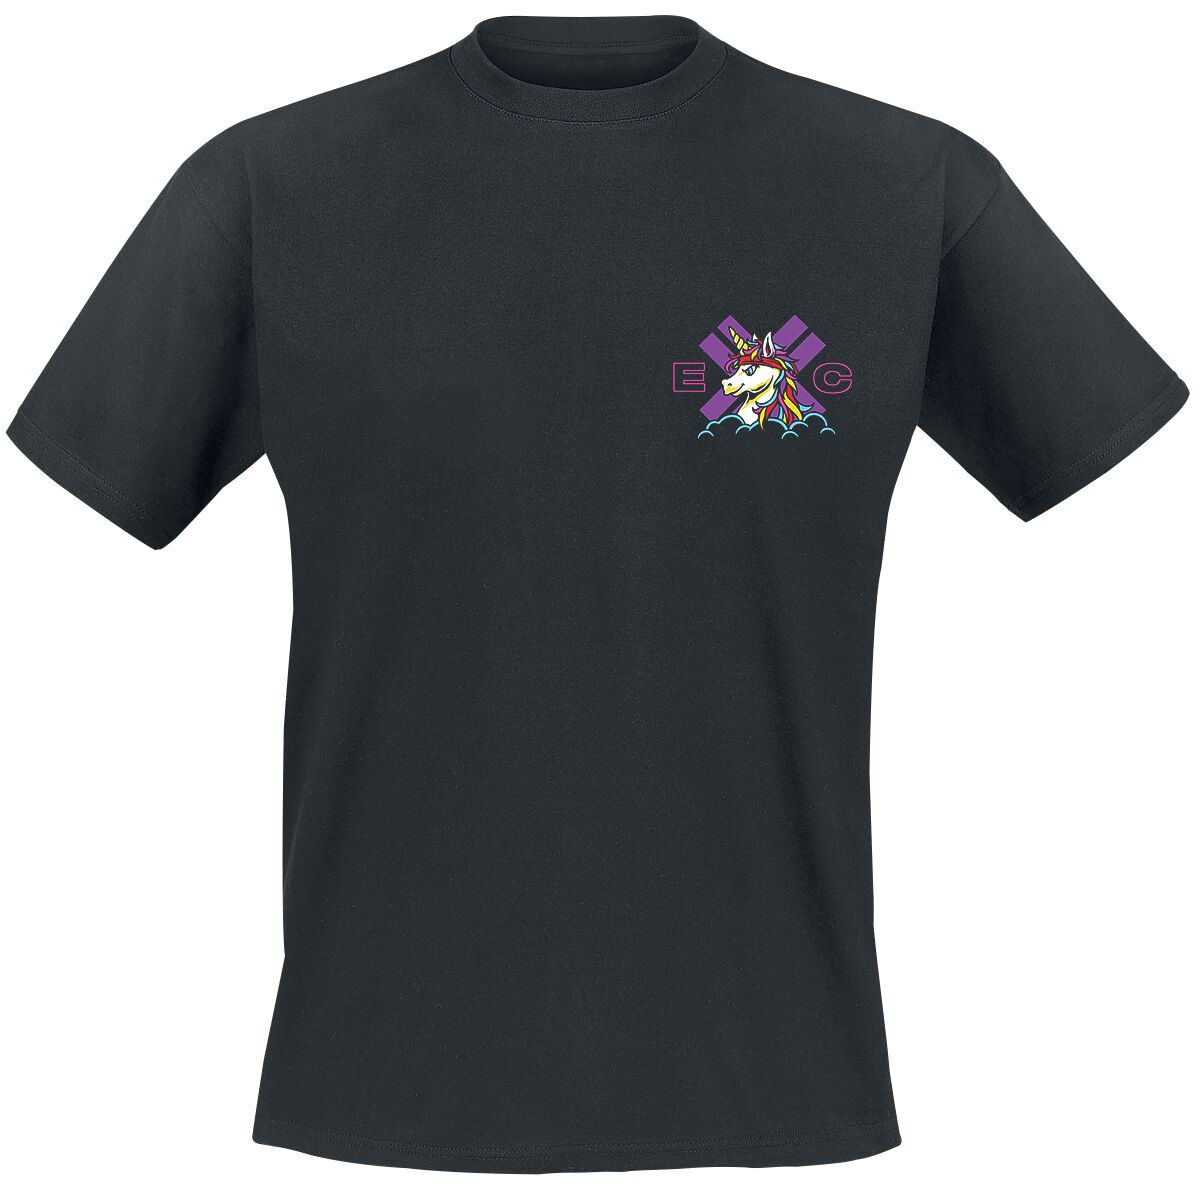 electric callboy t-shirt - spaceman unicorn - s bis 3xl - fÃ¼r mÃ¤nner - grÃ¶ÃŸe xxl - - lizenziertes merchandise! schwarz uomo